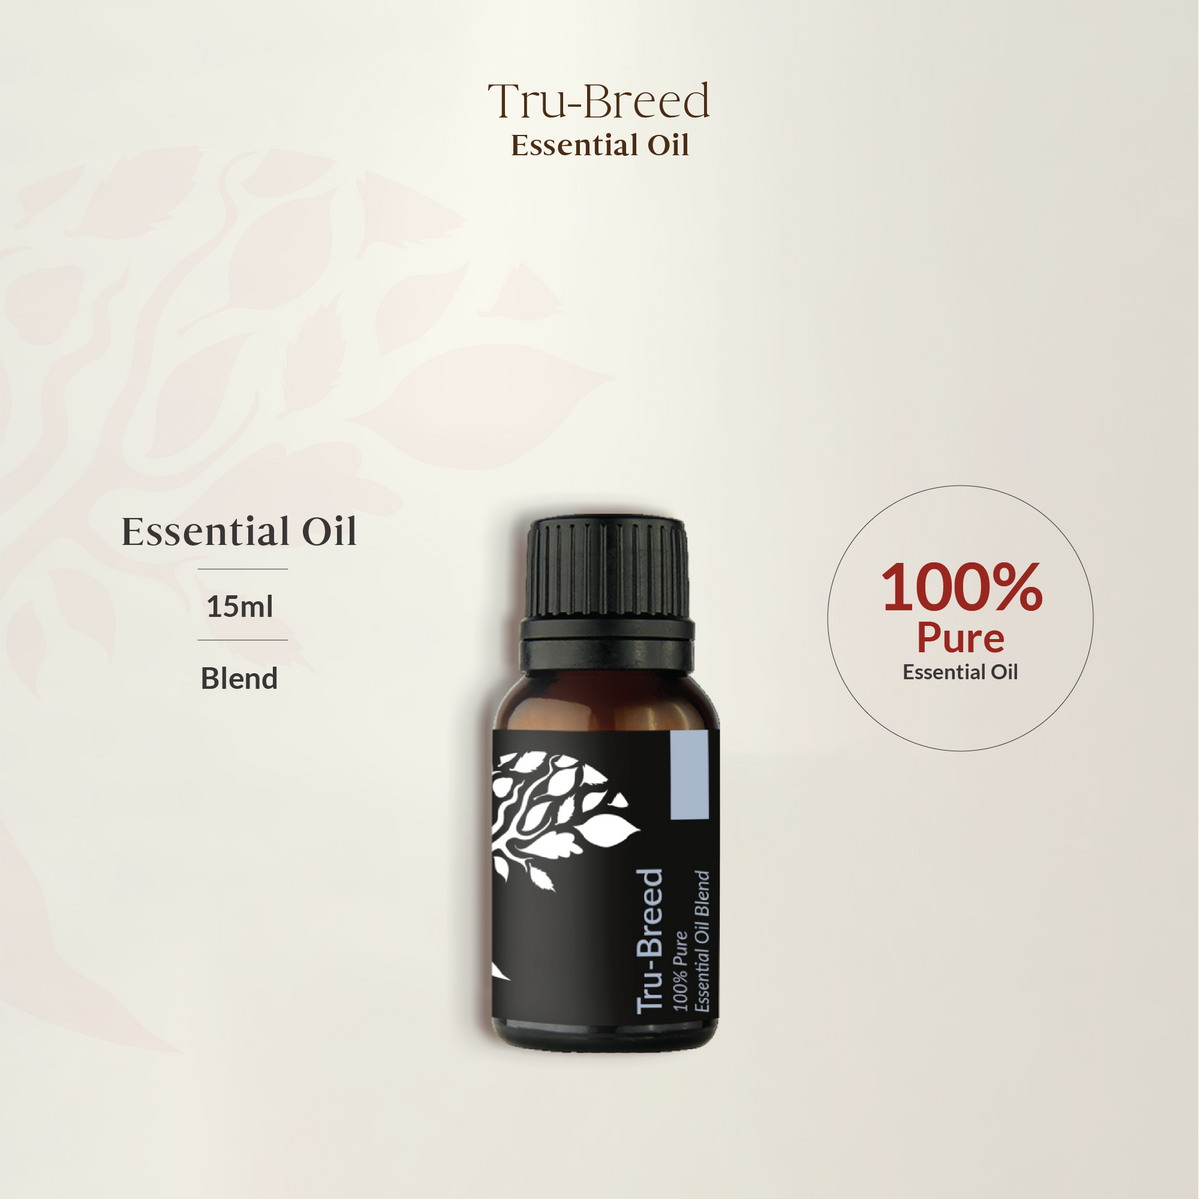 Tru-Breed Essential Oil Blend